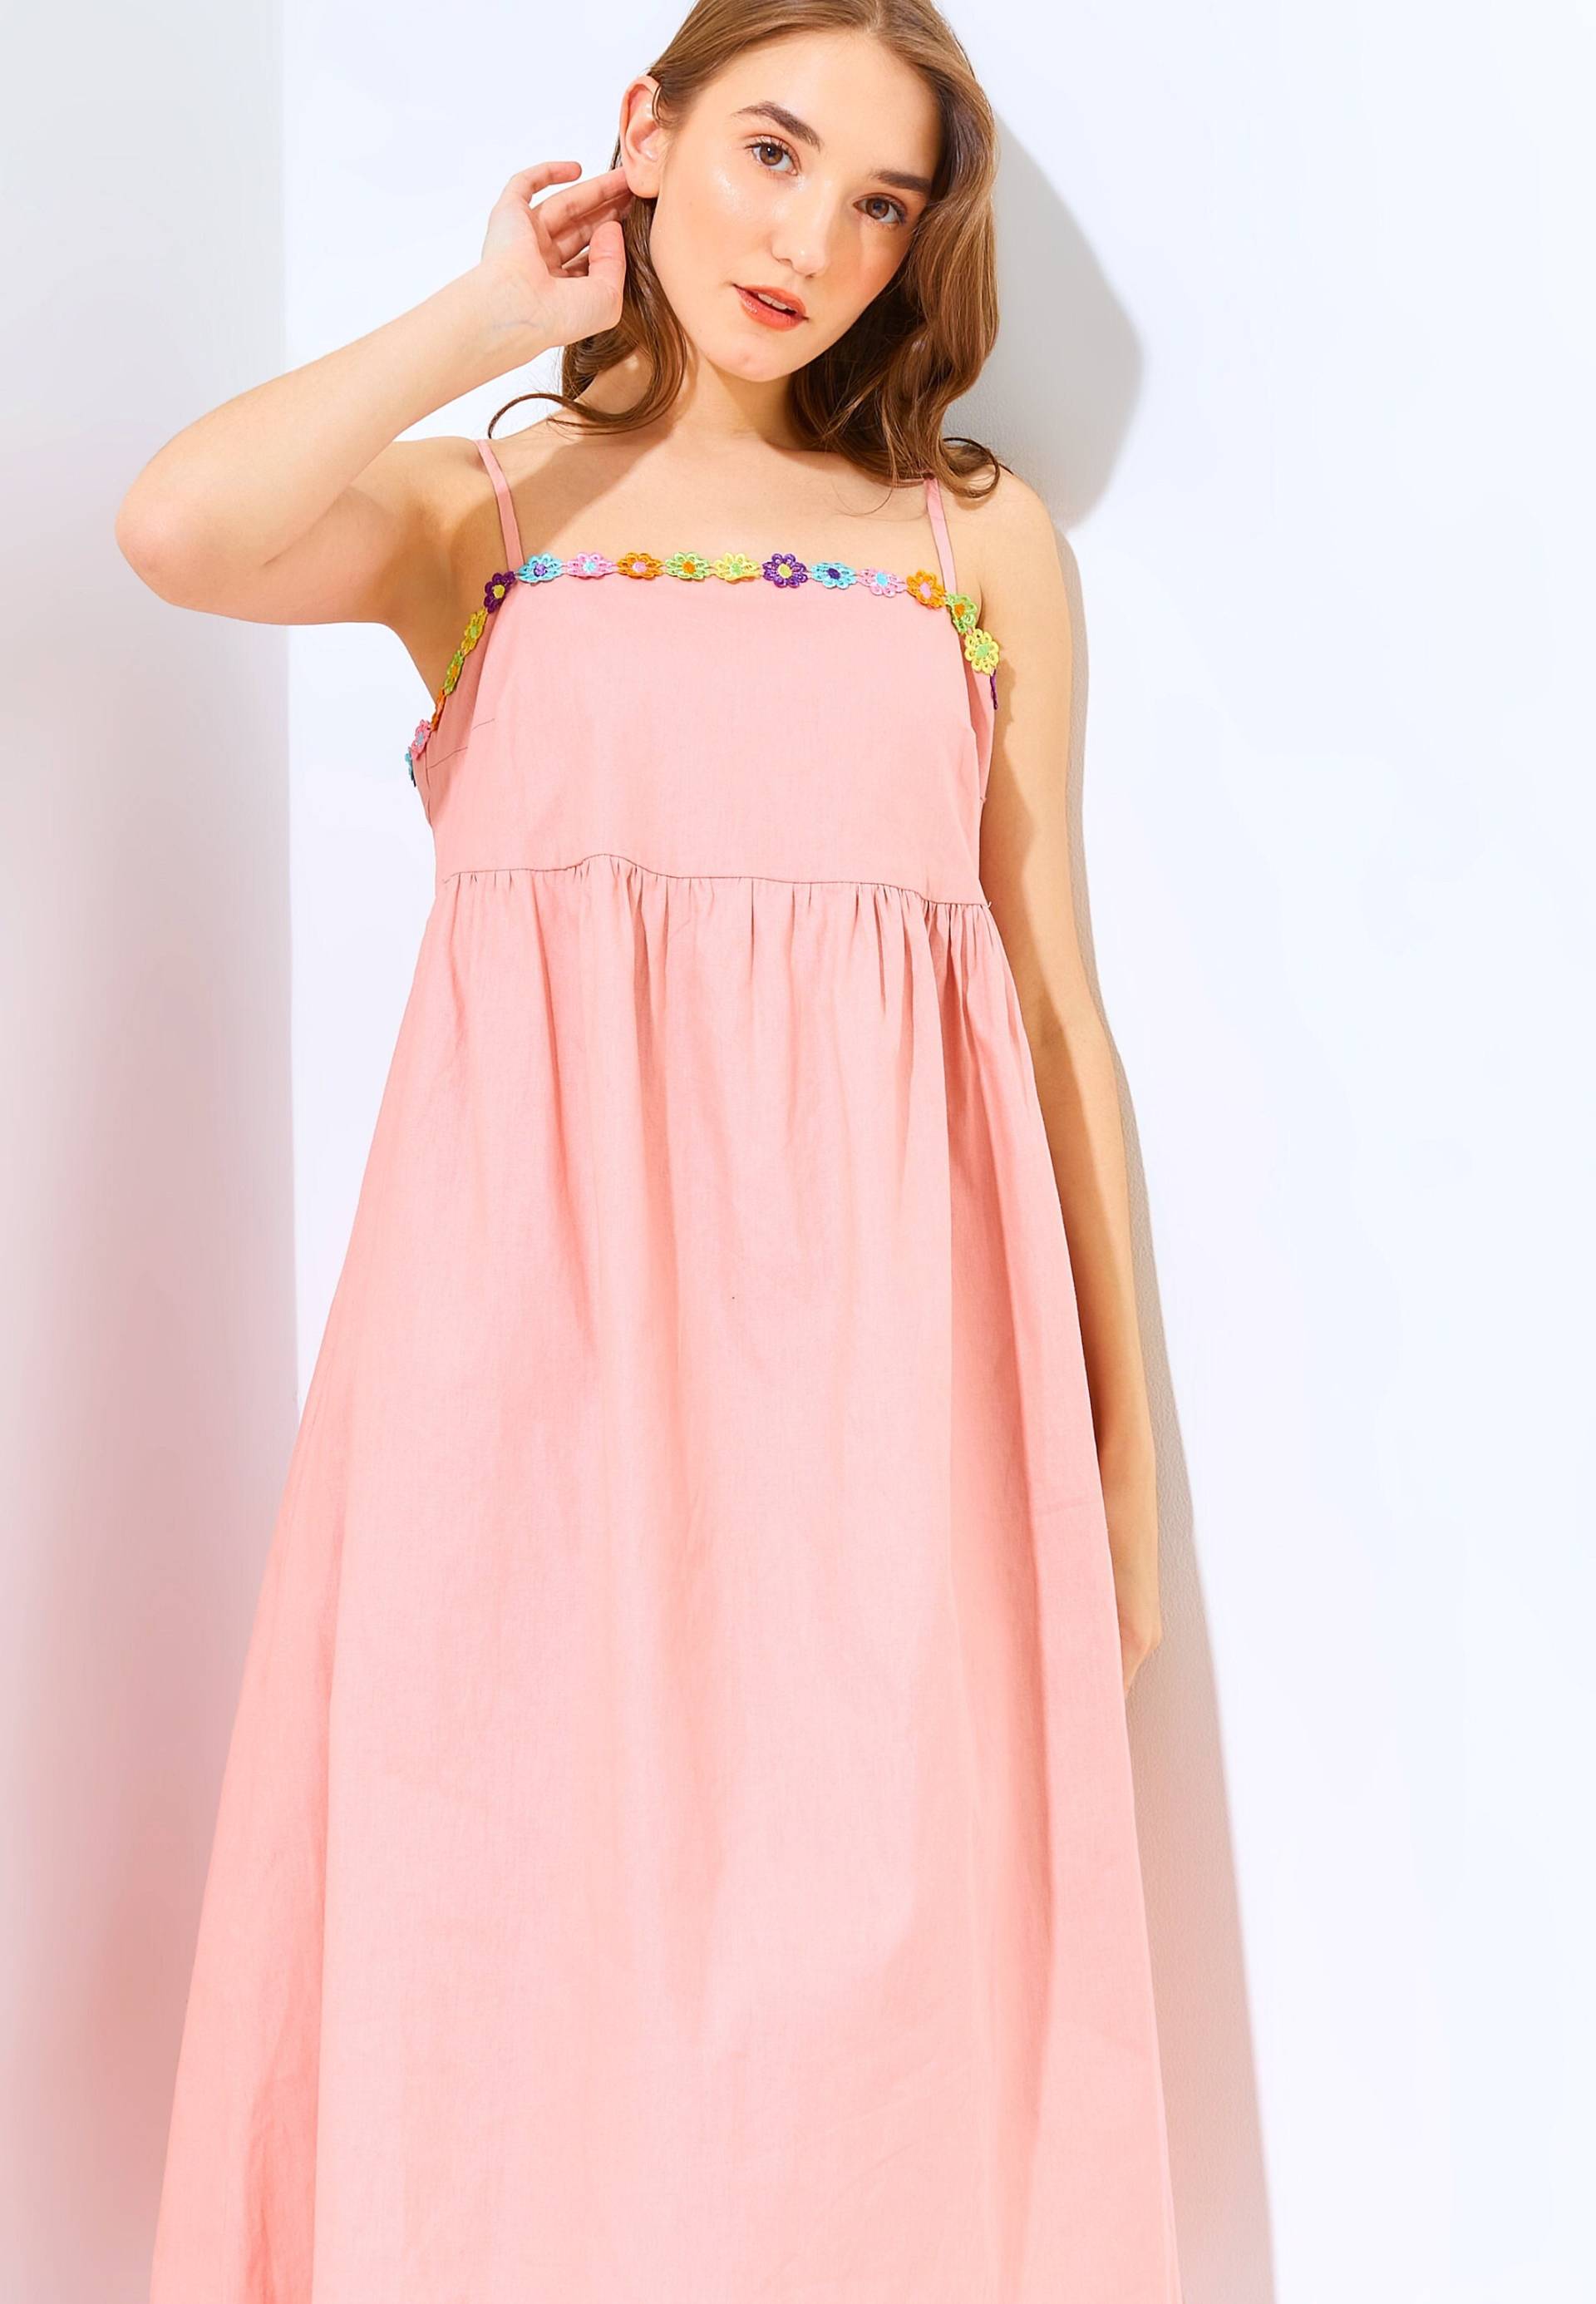 Sommerkleid Aus Baumwolle | Riemchen Kleid Mit Taschen Spaß Helles von DorteClothingAu